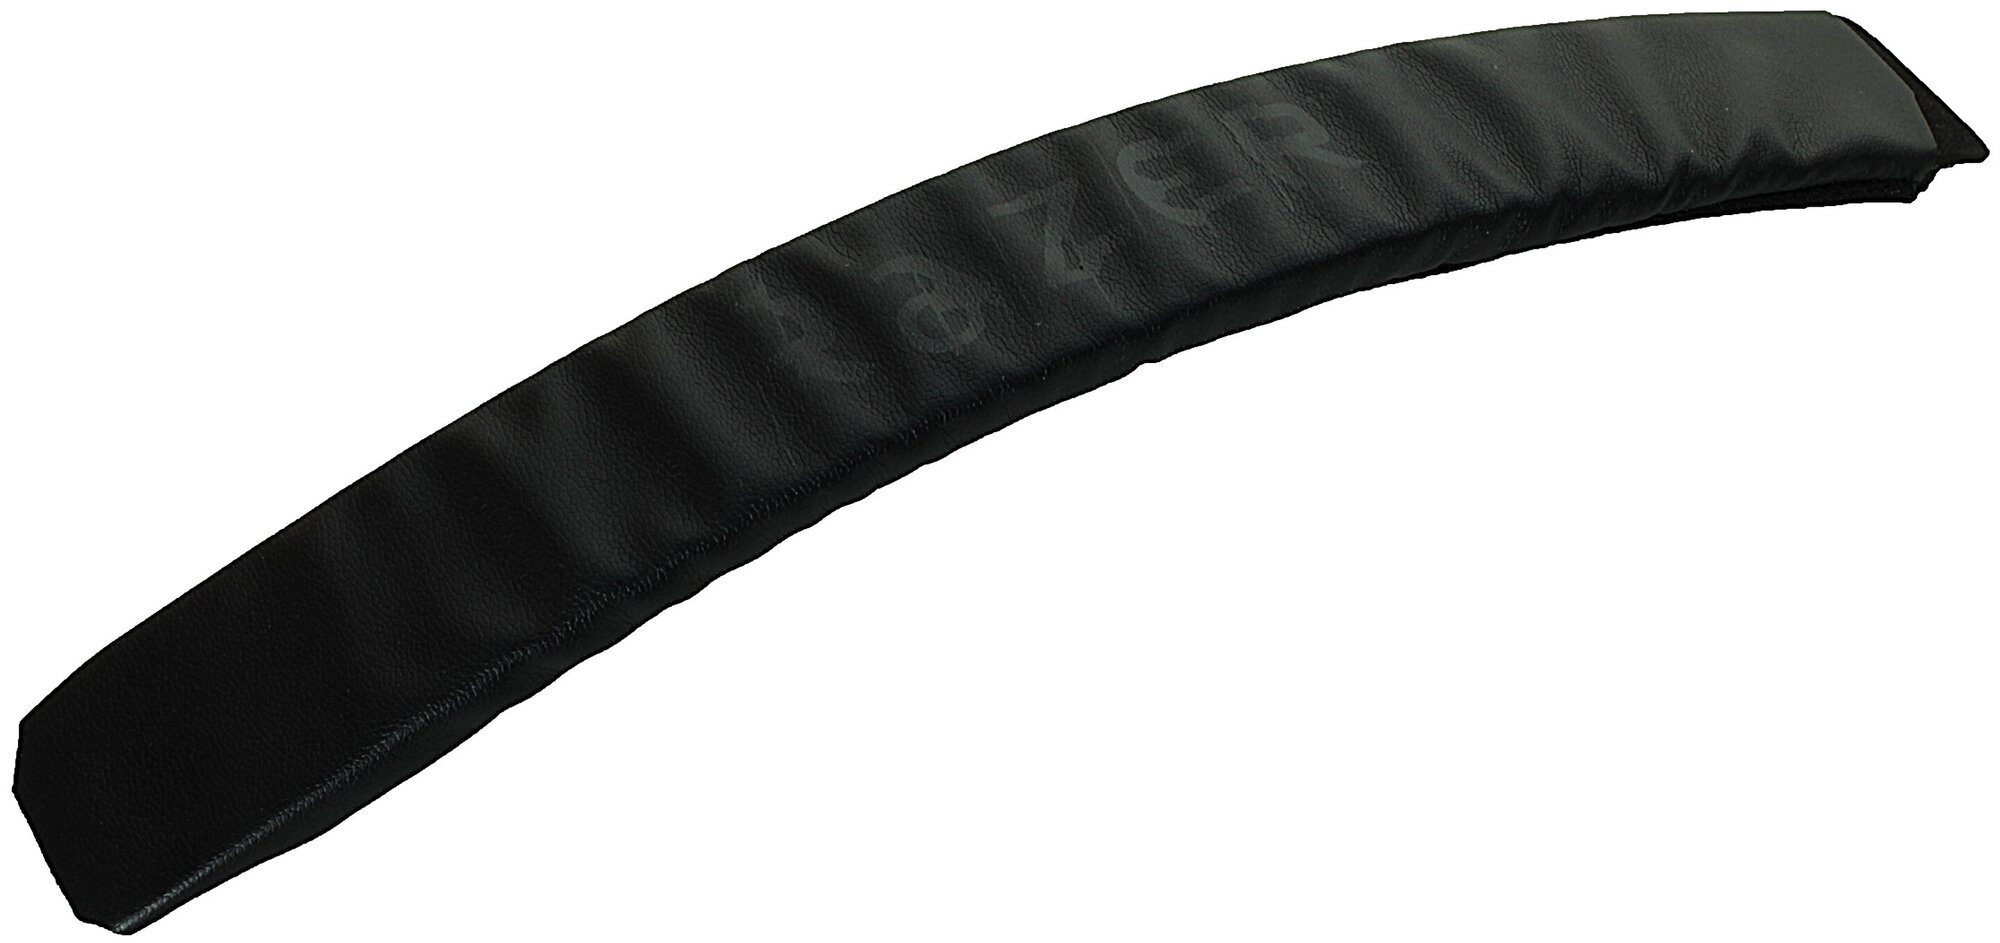 Обшивка оголовья для наушников Razer Kraken PRO / Kraken 7.1 / Electra черная